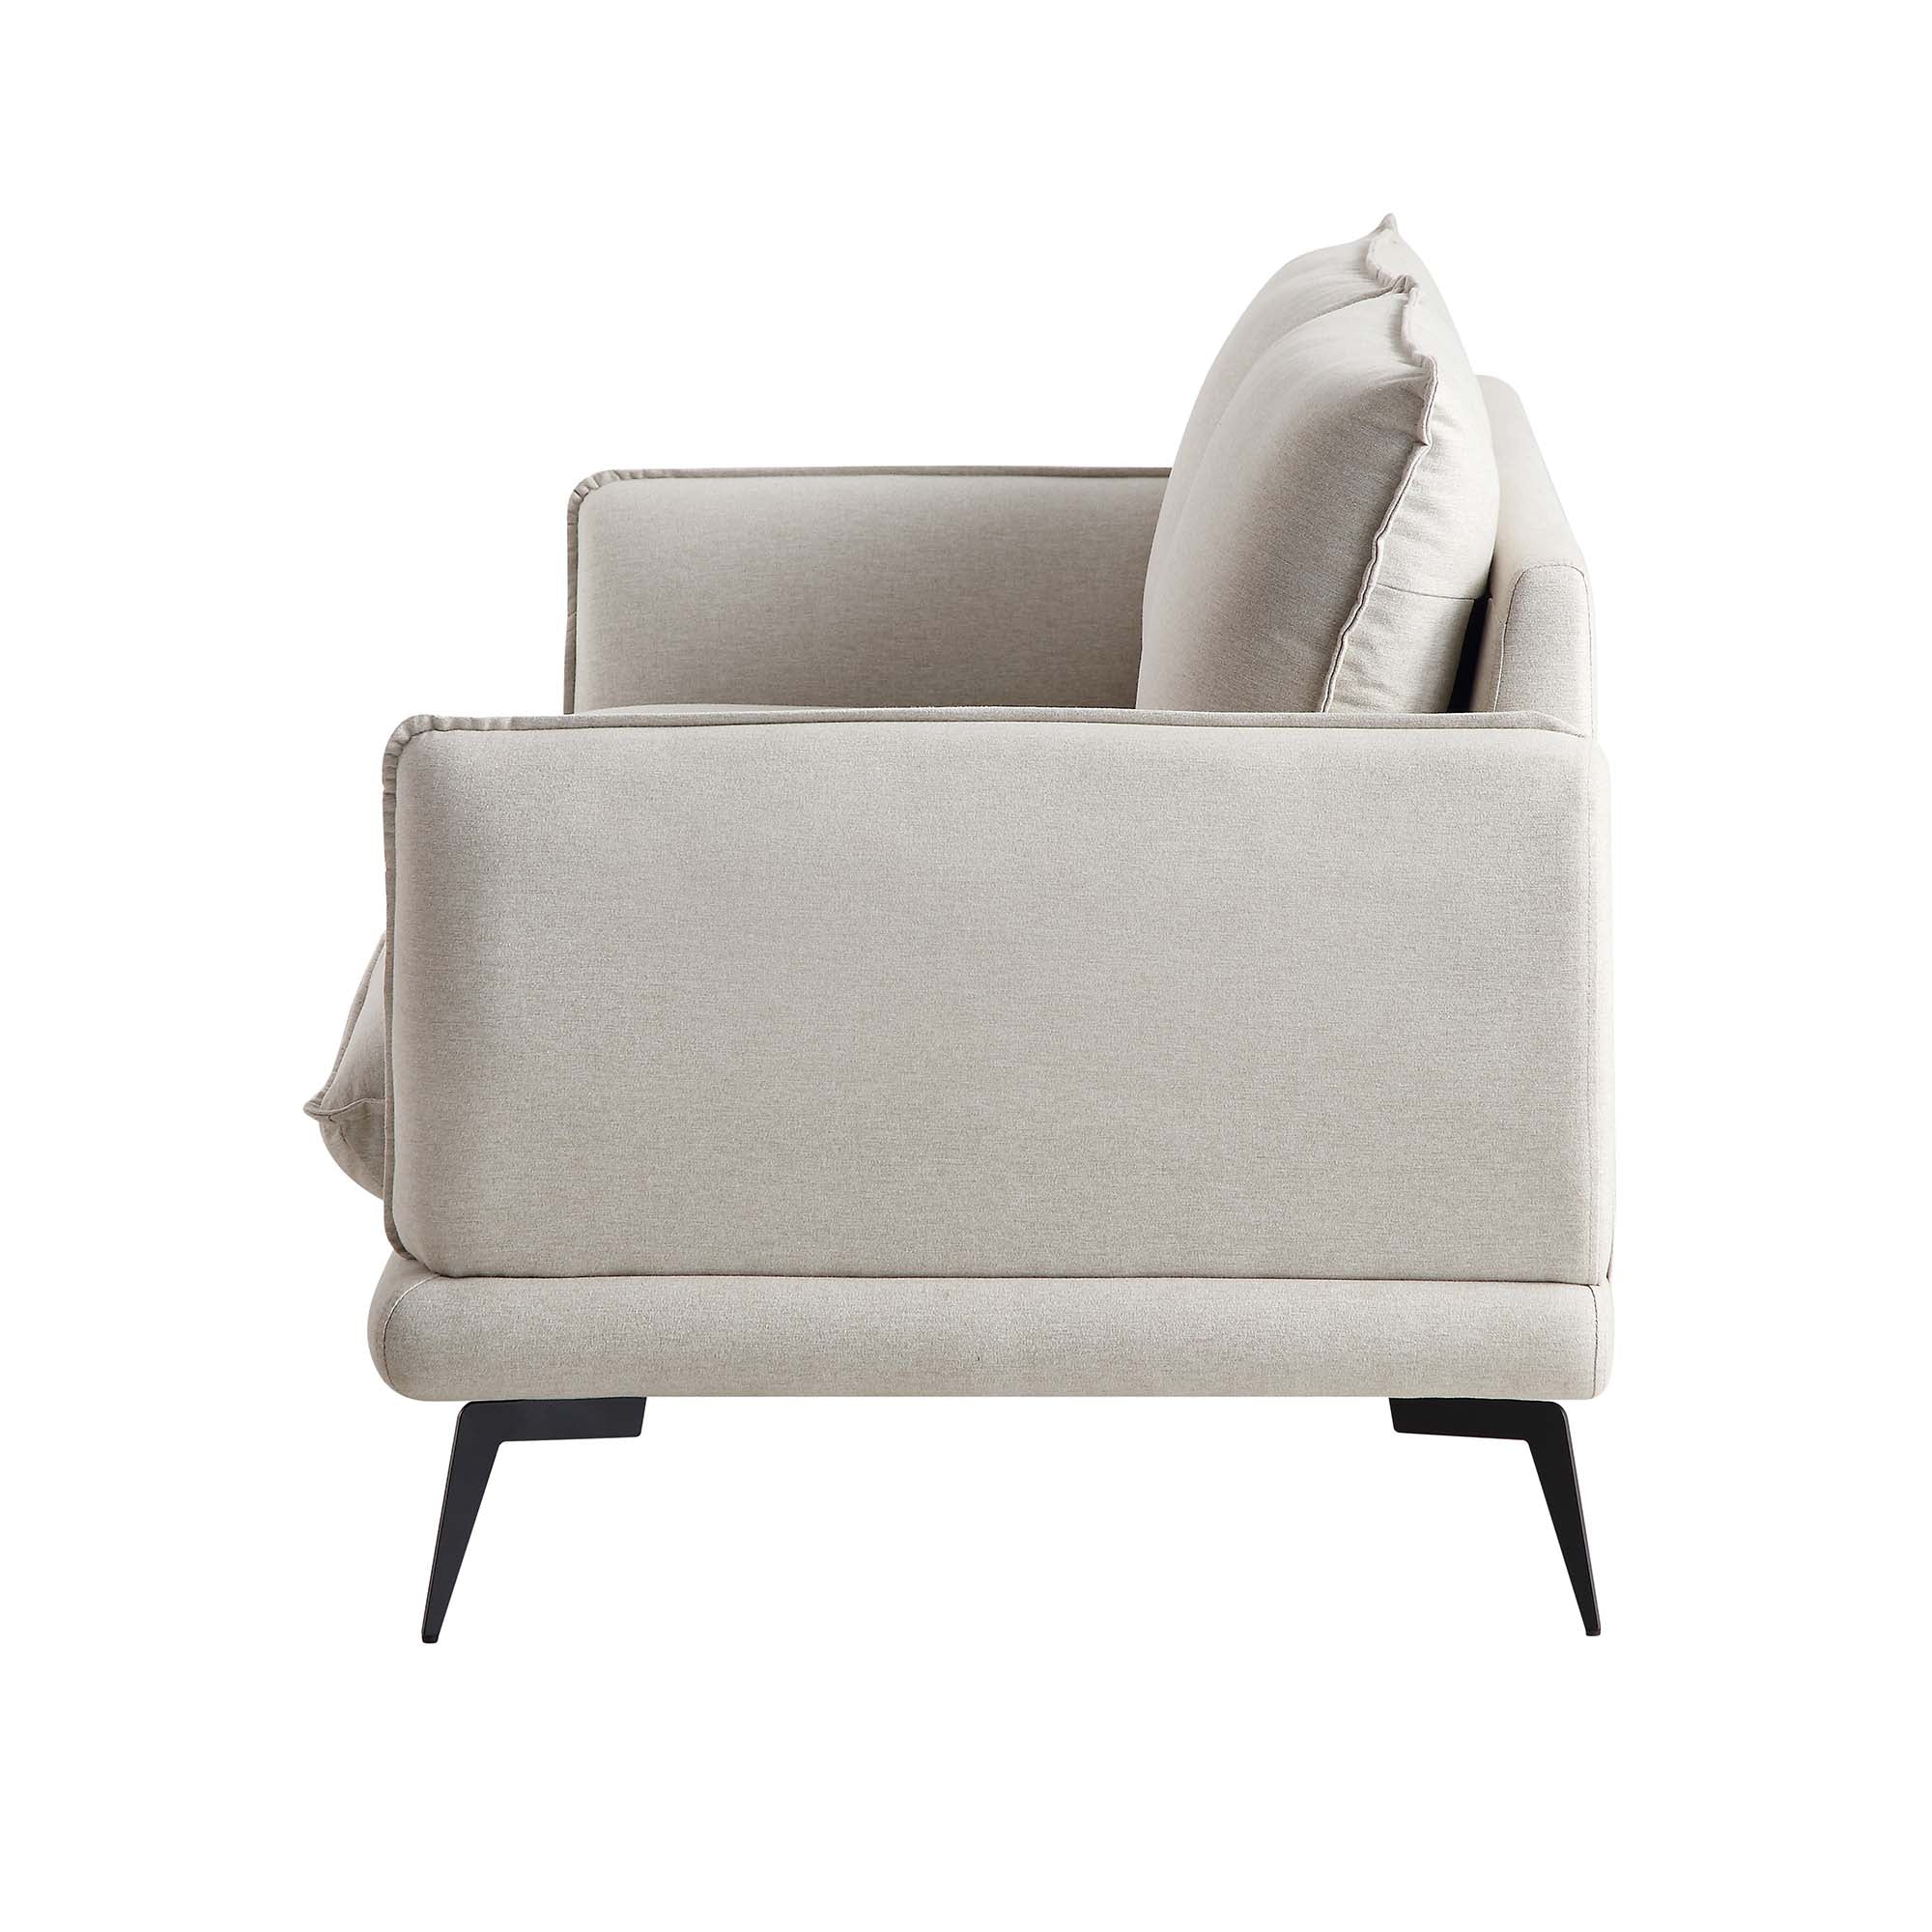 Obriel Oatmeal Fabric Sofa, 3-Seater